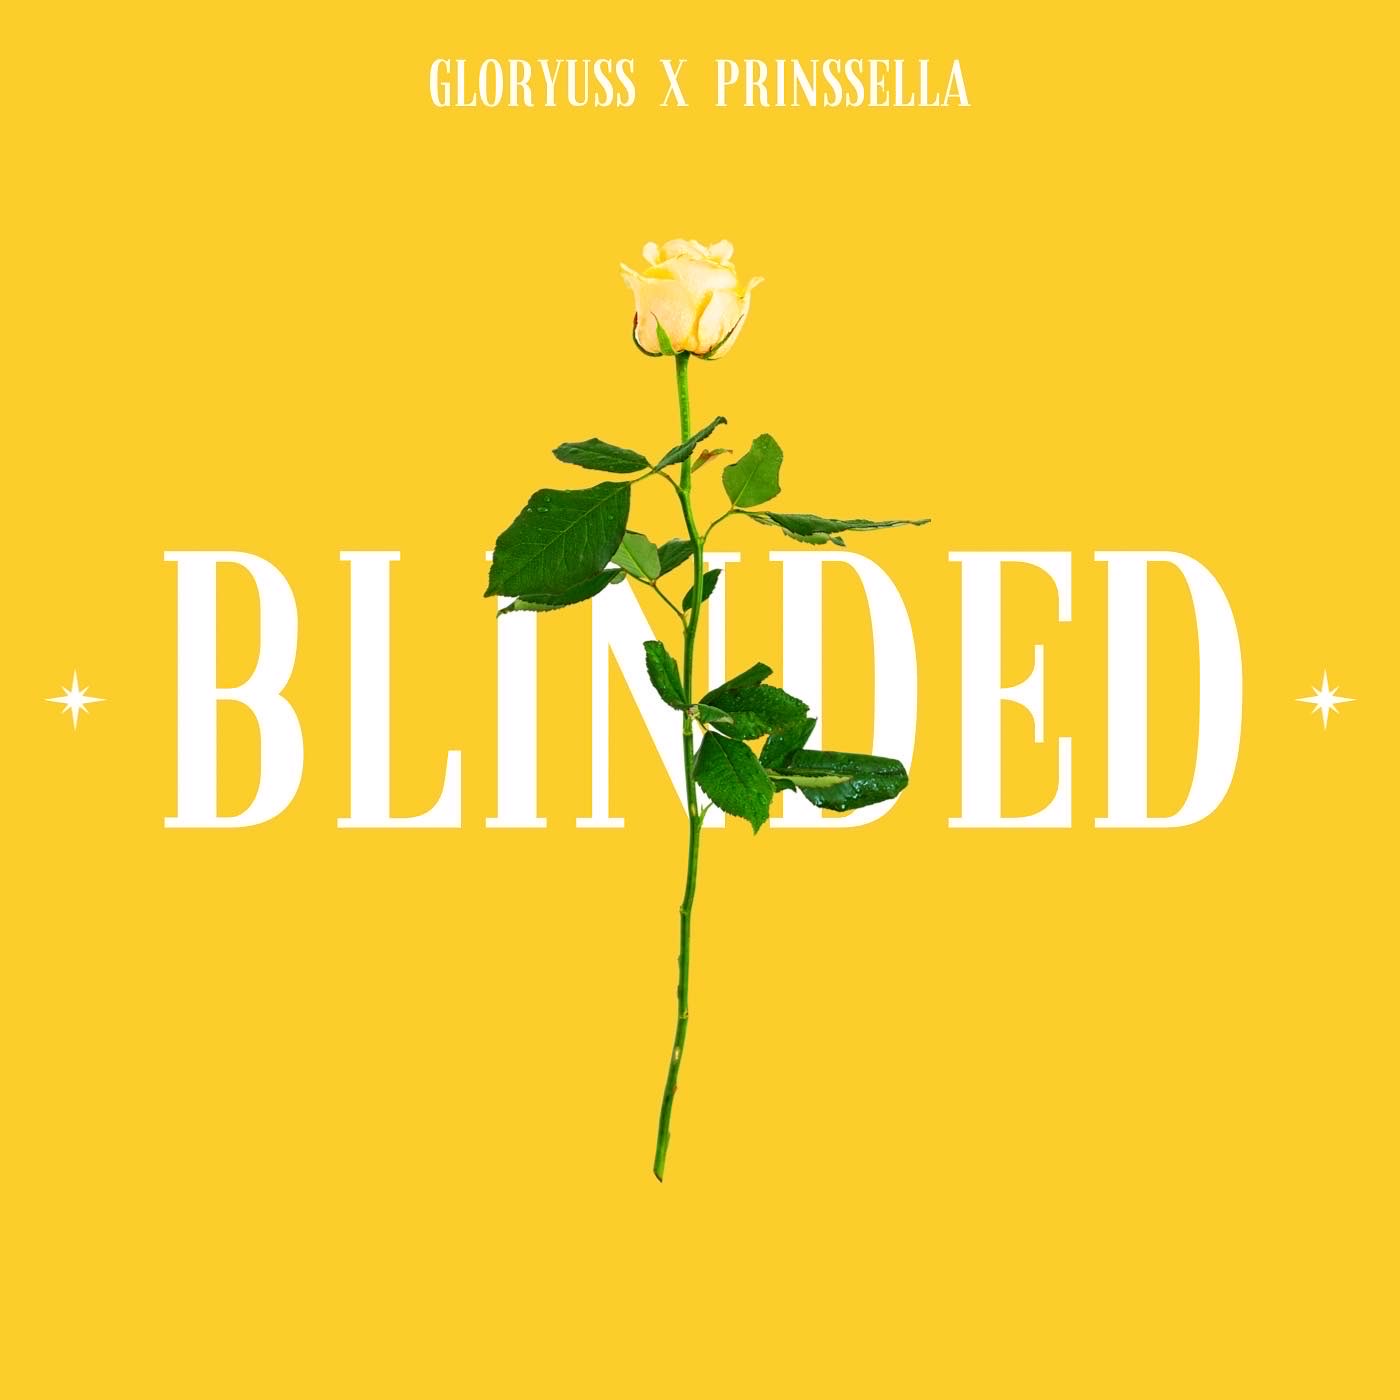 Gloryuss & Prinssella – Blinded